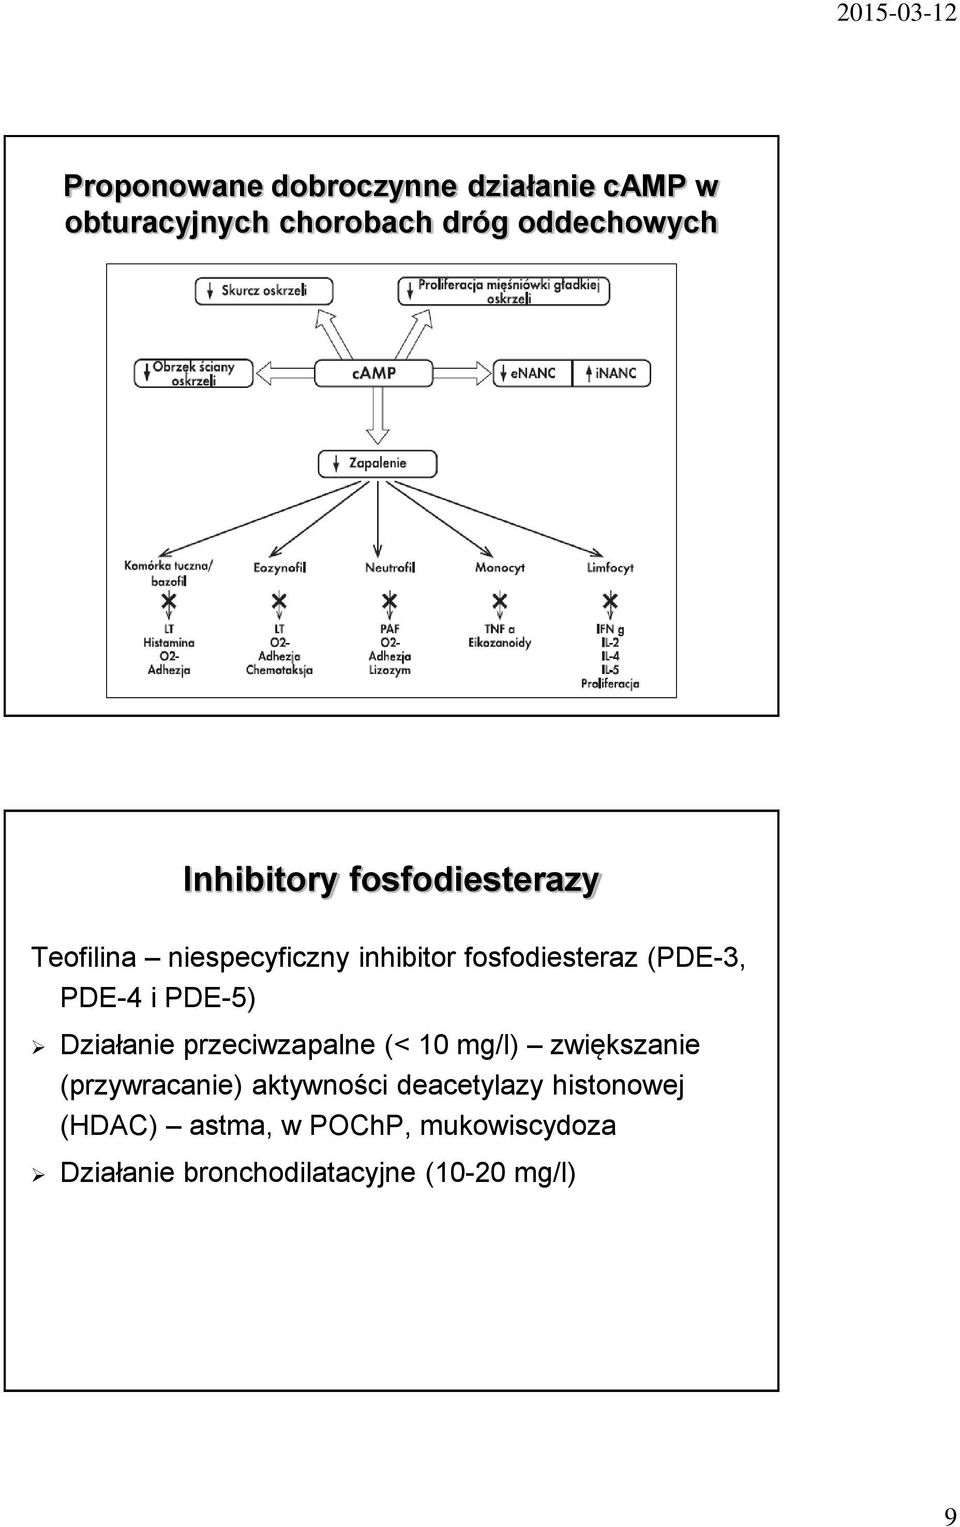 PDE-4 i PDE-5) Działanie przeciwzapalne (< 10 mg/l) zwiększanie (przywracanie) aktywności